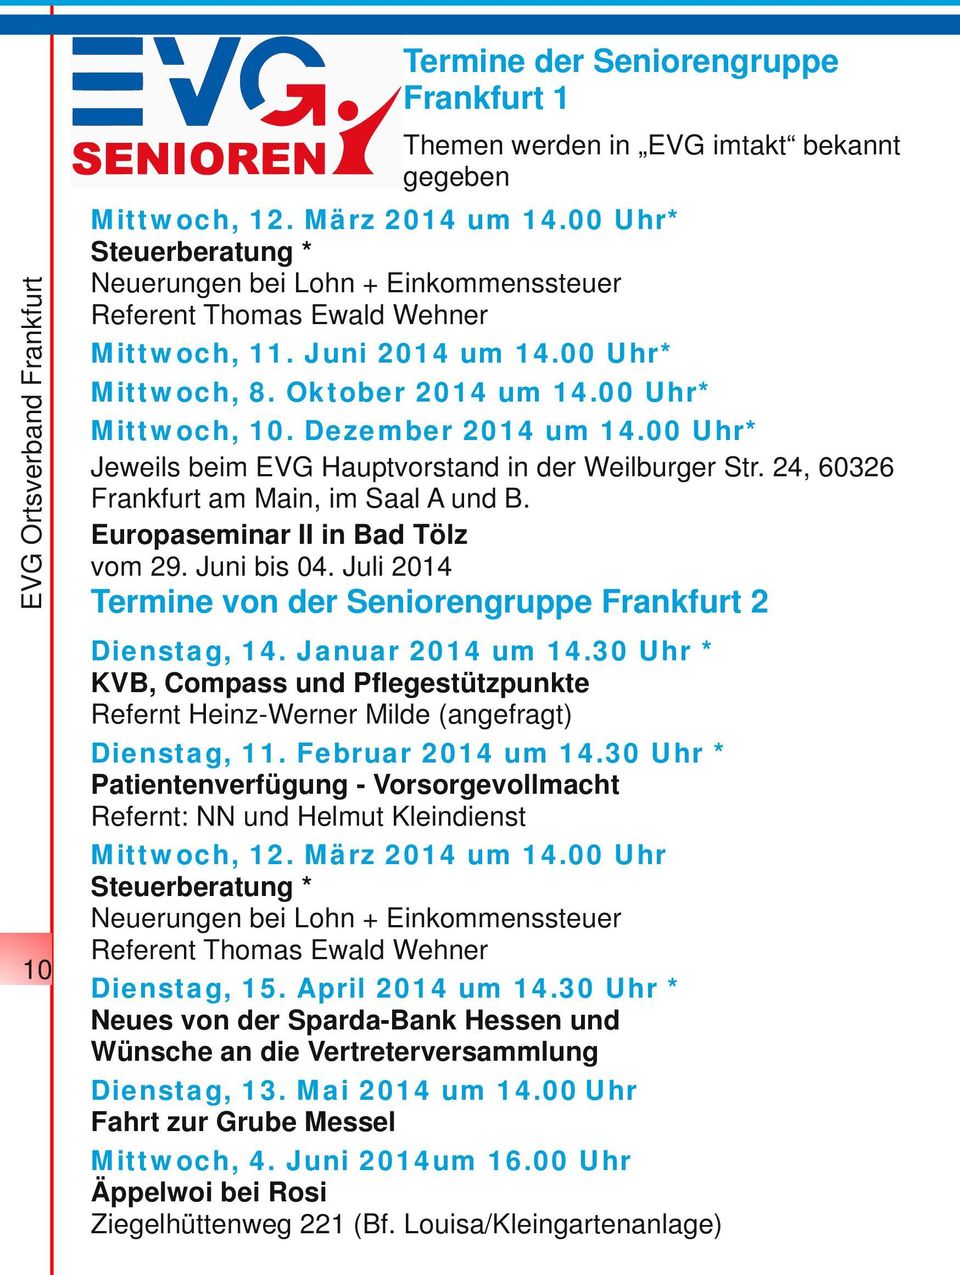 Dezember 2014 um 14.00 Uhr* Jeweils beim EVG Hauptvorstand in der Weilburger Str. 24, 60326 Frankfurt am Main, im Saal A und B. Europaseminar II in Bad Tölz vom 29. Juni bis 04.